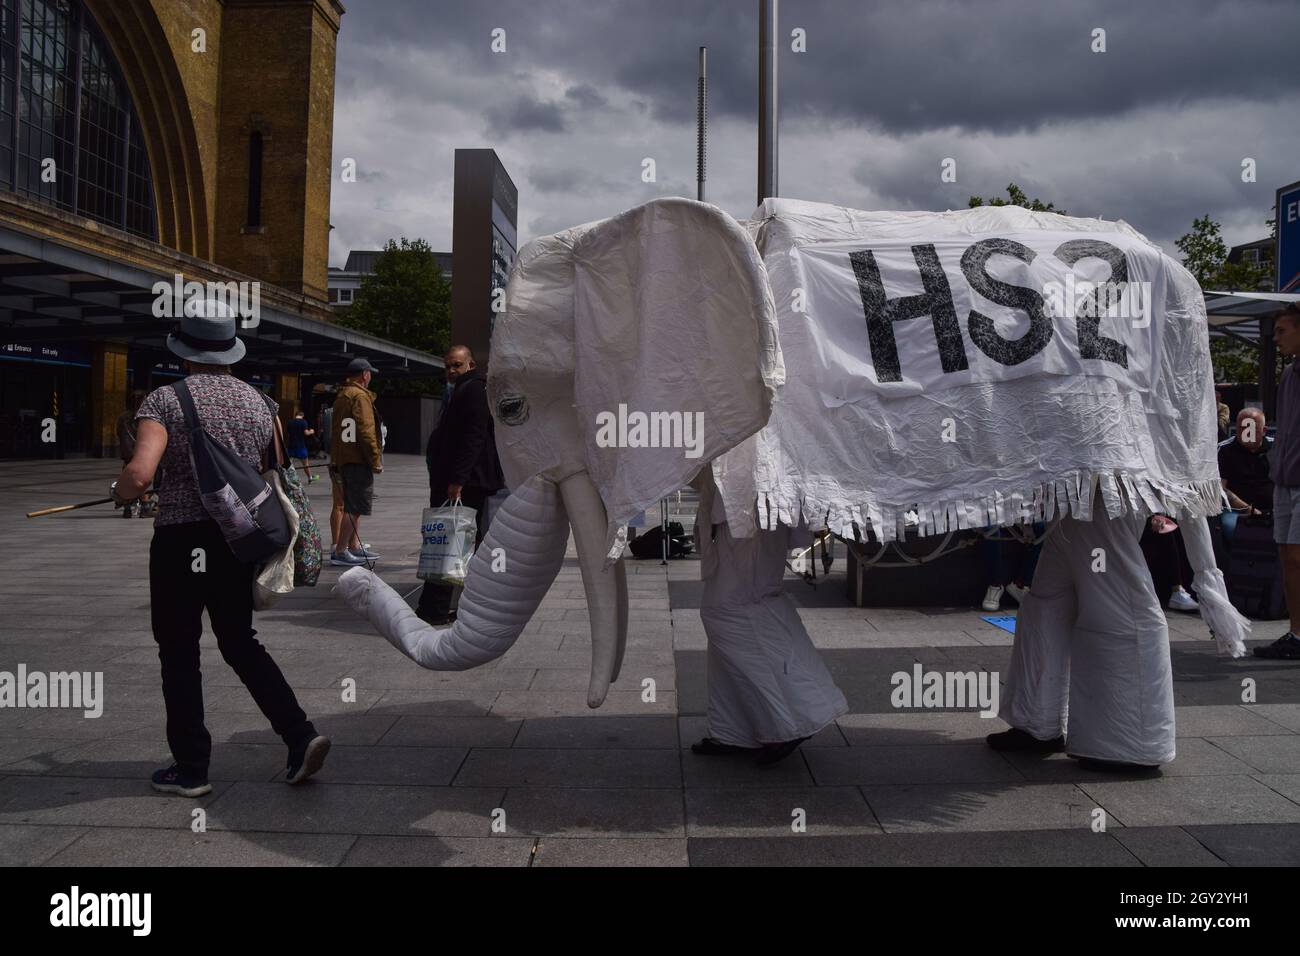 Londres, Reino Unido. 5th de agosto de 2021. Los manifestantes que llevan un traje de elefante blanco 'HS2' son conducidos fuera de la estación de tren por un manifestante. Los activistas se reunieron fuera de la estación de King's Cross en protesta contra el nuevo sistema ferroviario High Speed 2 (HS2), que los ecologistas dicen que será 'ecológicamente devastador' y costará a los contribuyentes £170 mil millones. Foto de stock